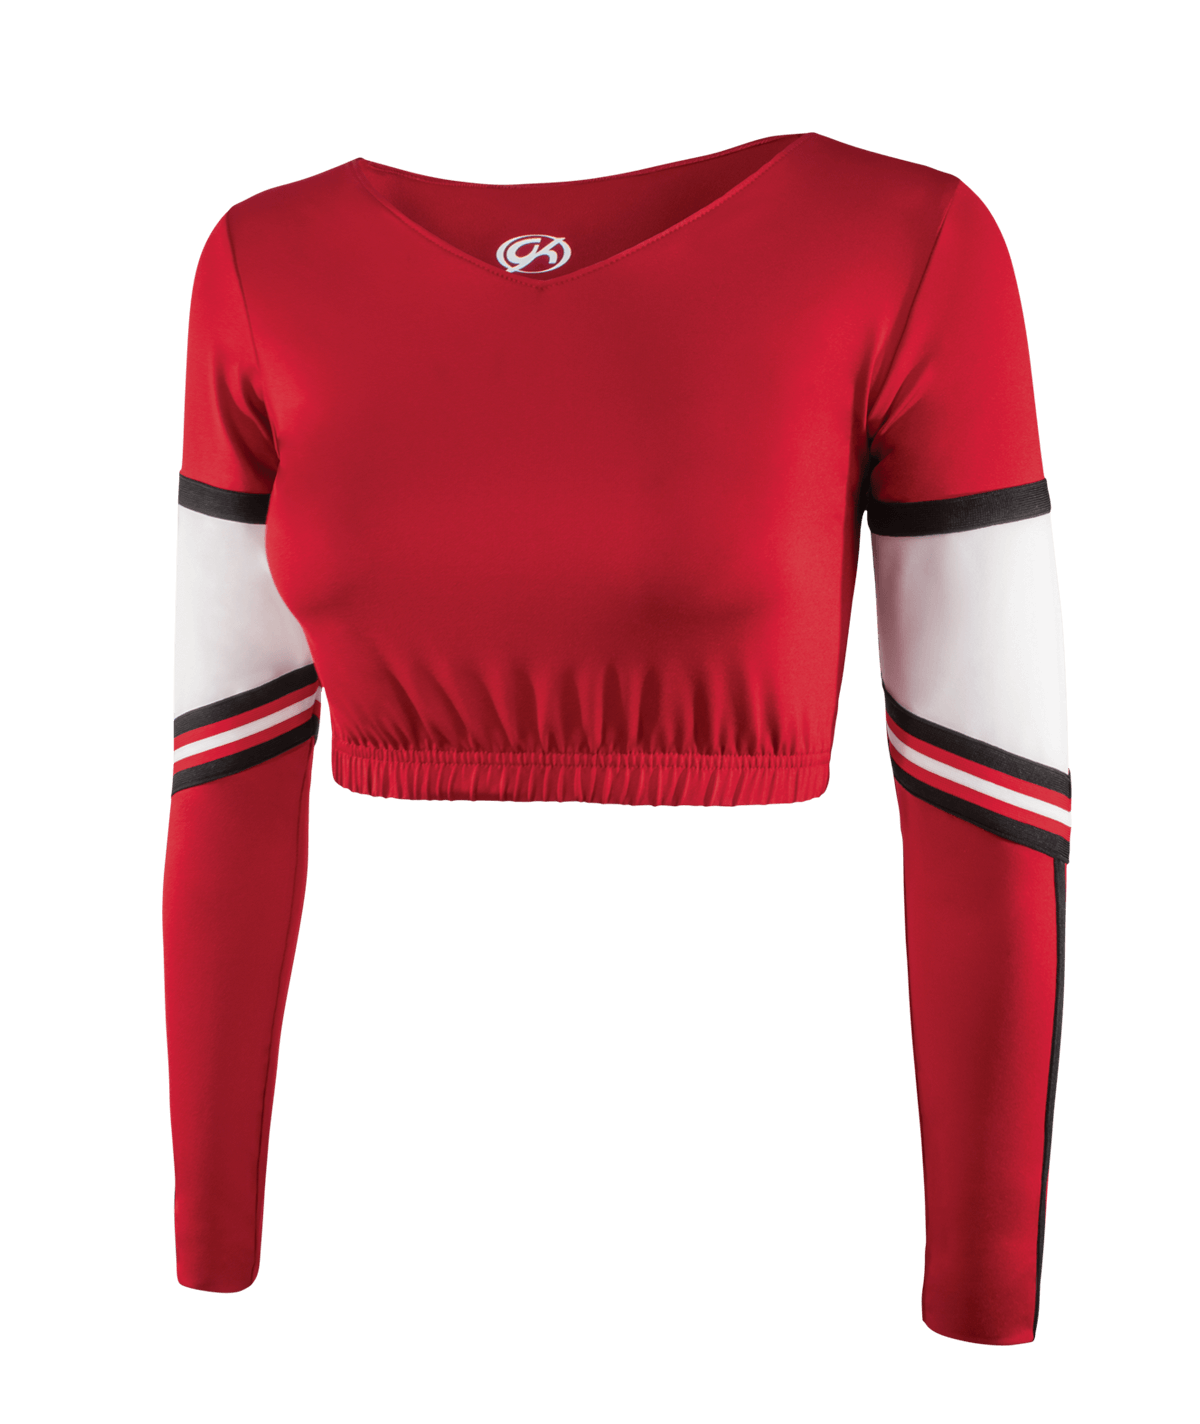 Authentic Rittman Ohio Red and White Cheerleading Uniform Cheer Shirt Shell Top 